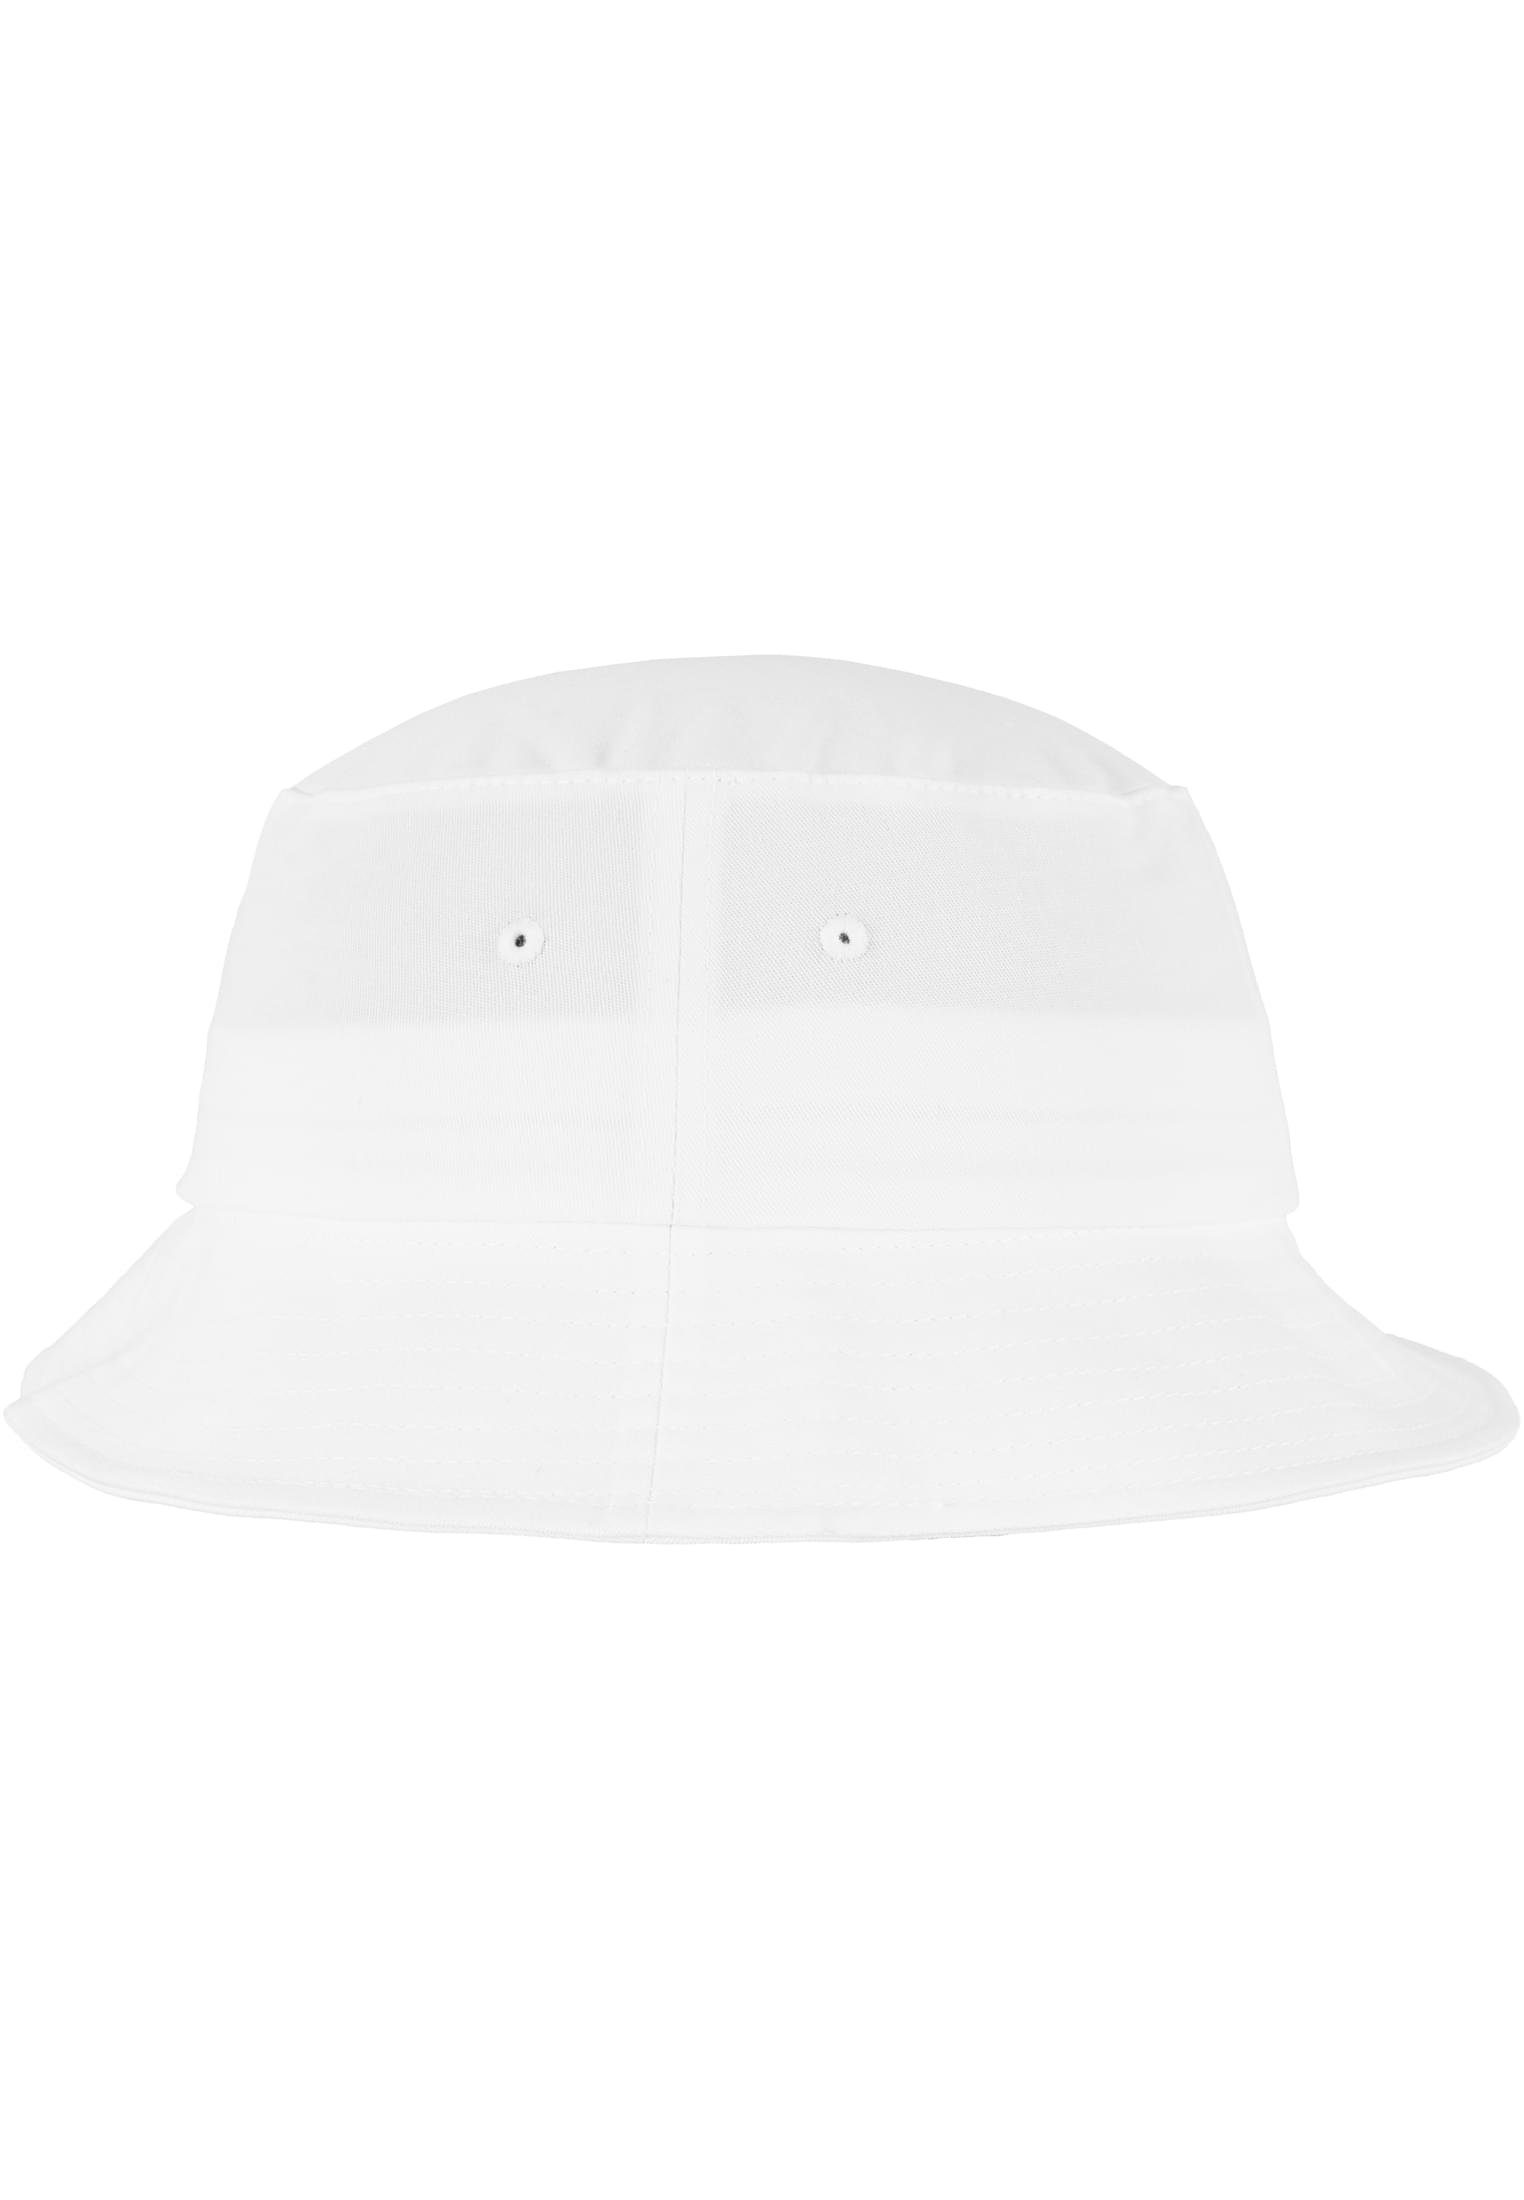 Flexfit Flex Cap Accessoires white Hat Twill Bucket Cotton Flexfit